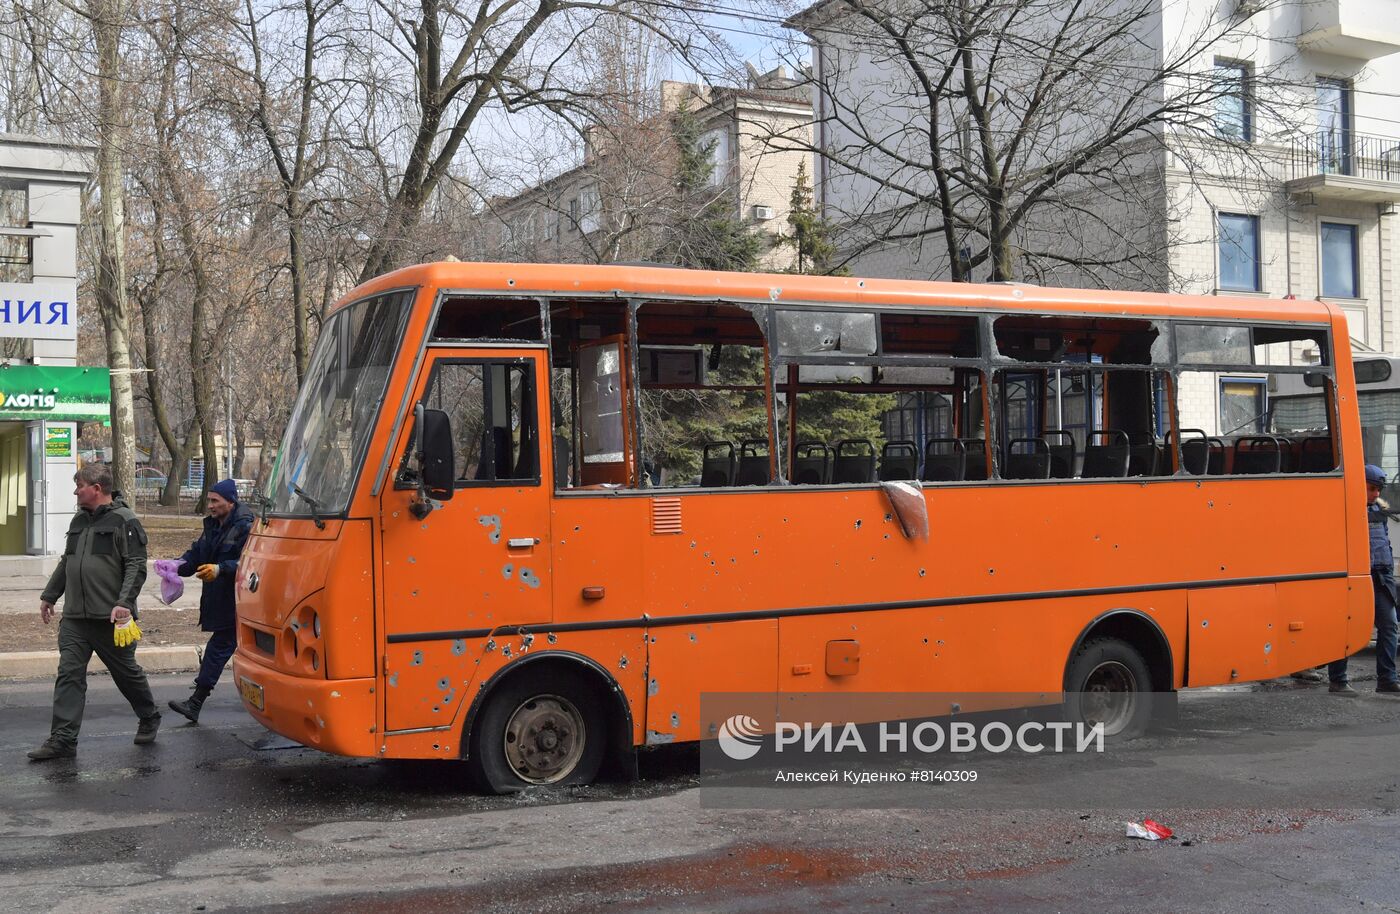 Украинские военные обстреляли Донецк